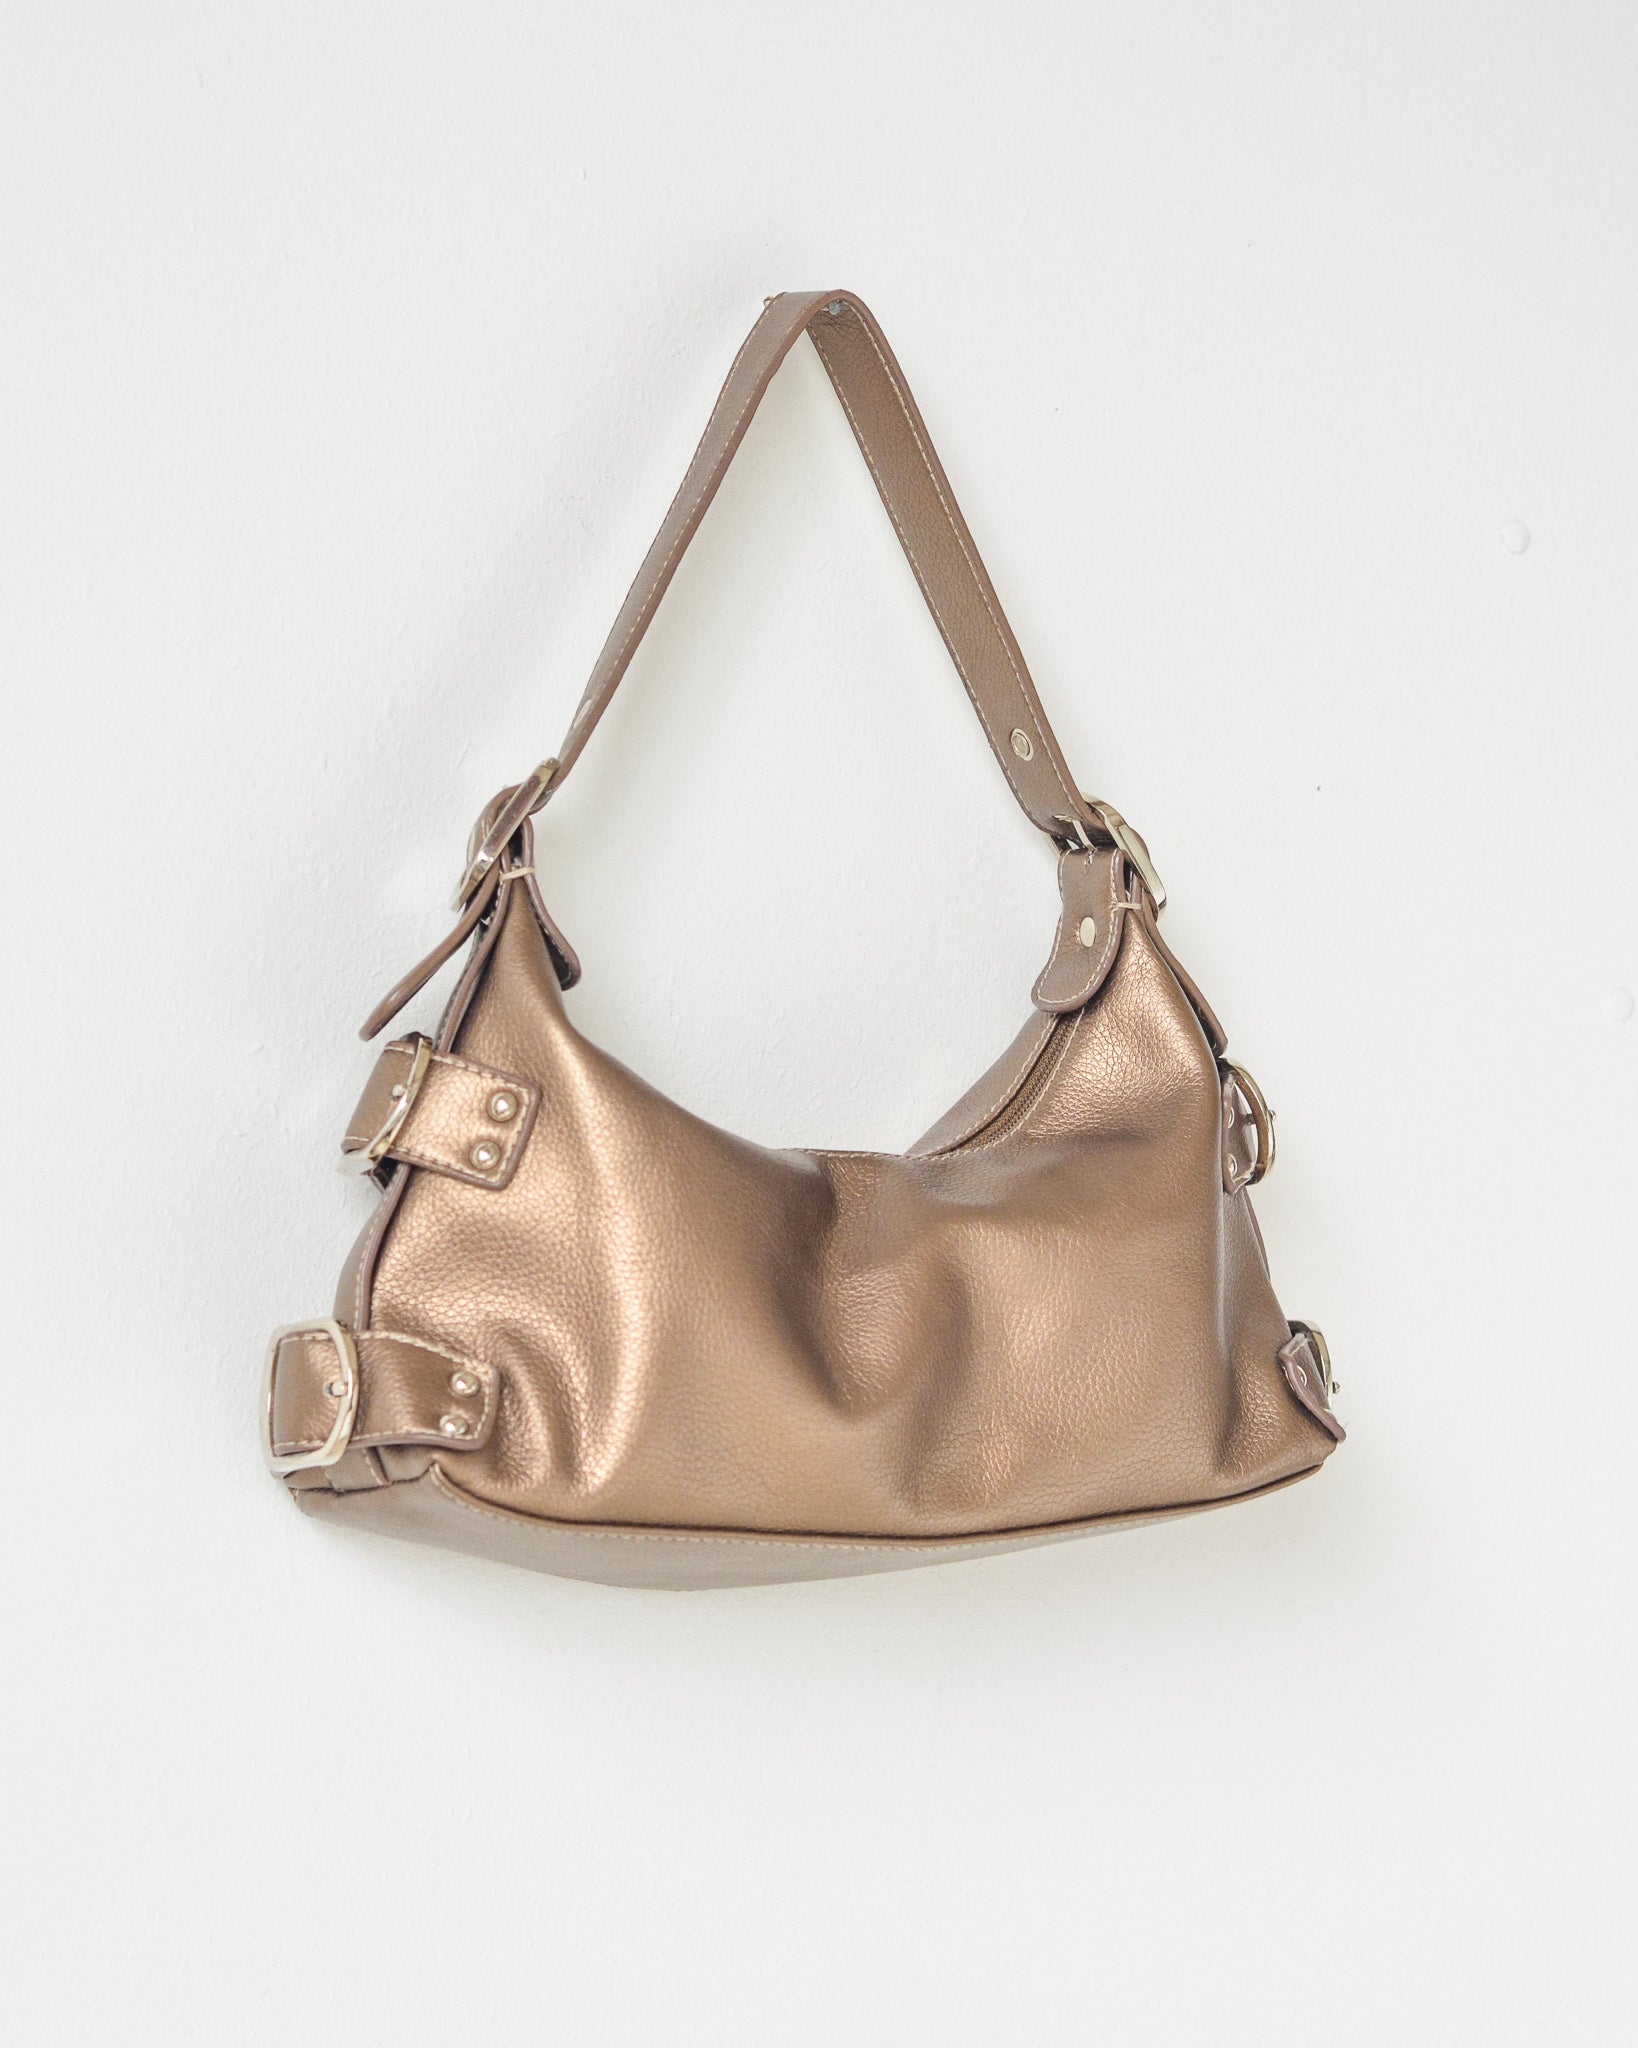 Vintage bronze faux leather buckle purse.